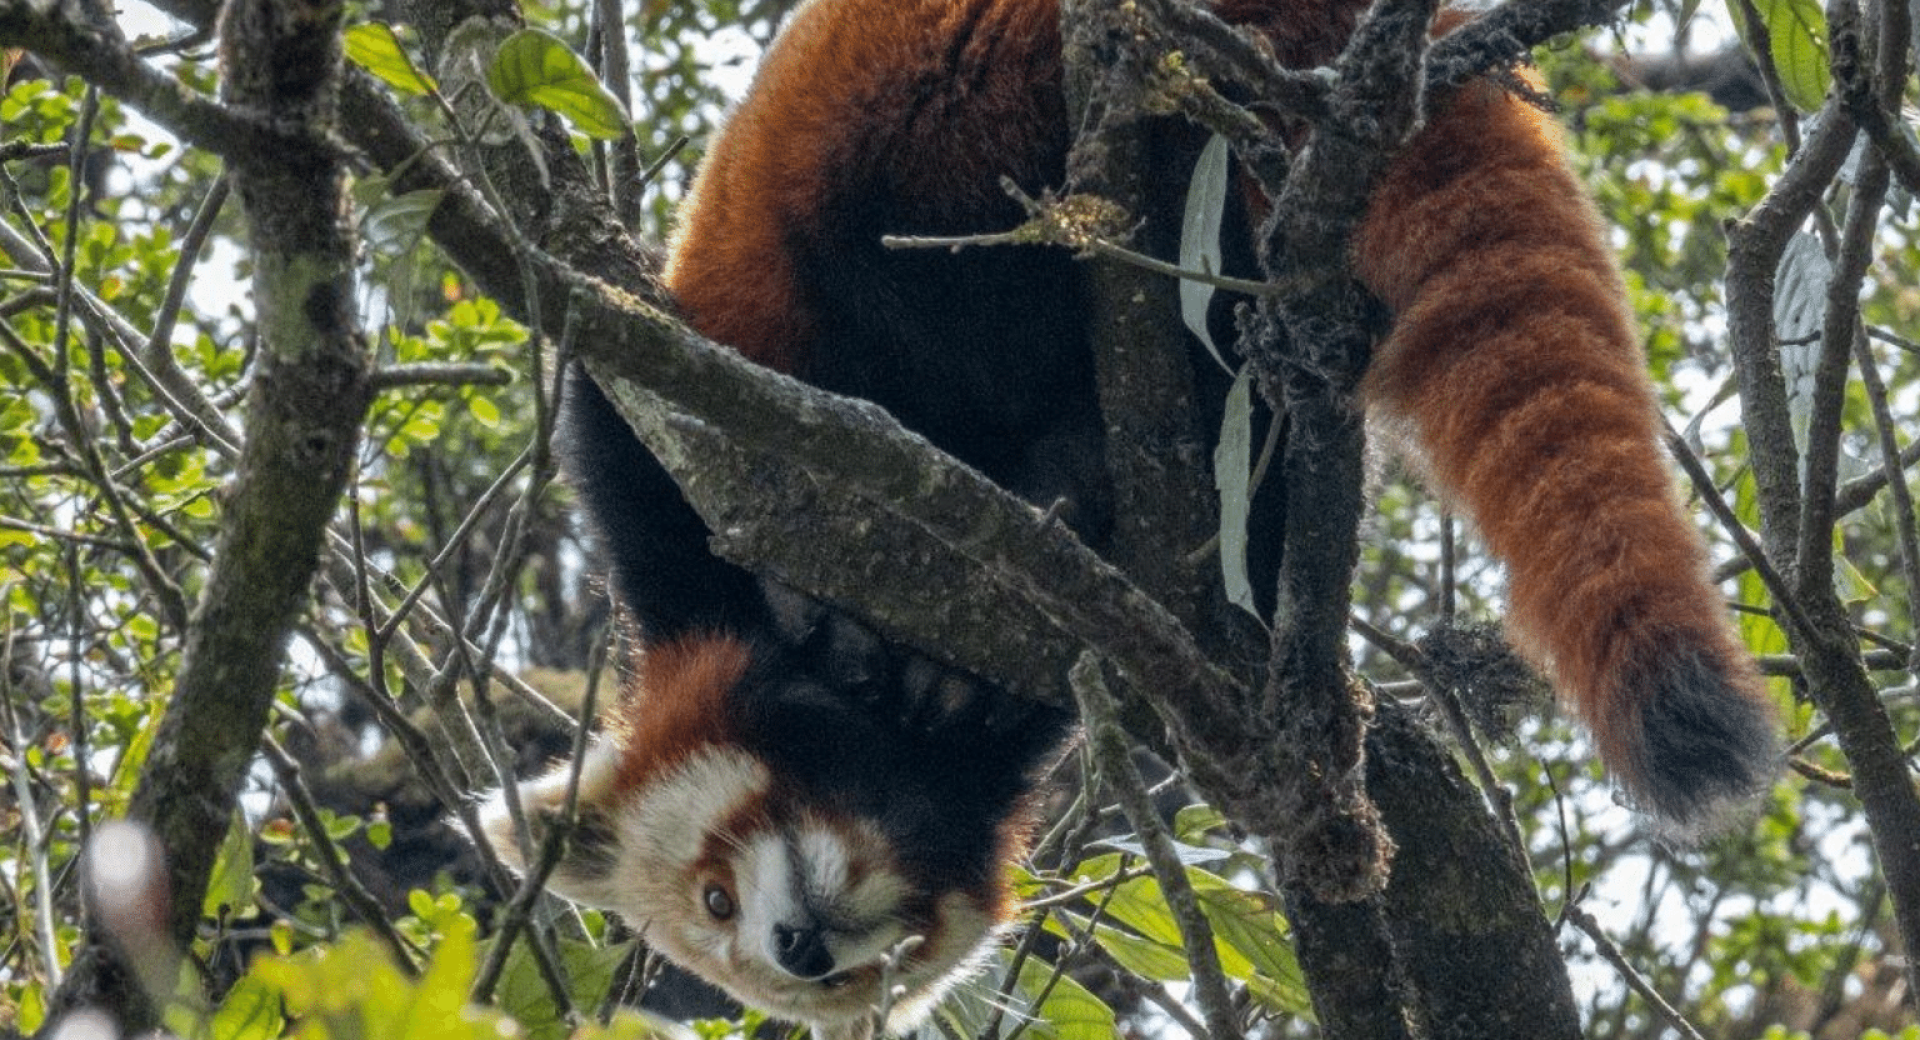 Guardians of the Red Panda: Restoring Jaubari